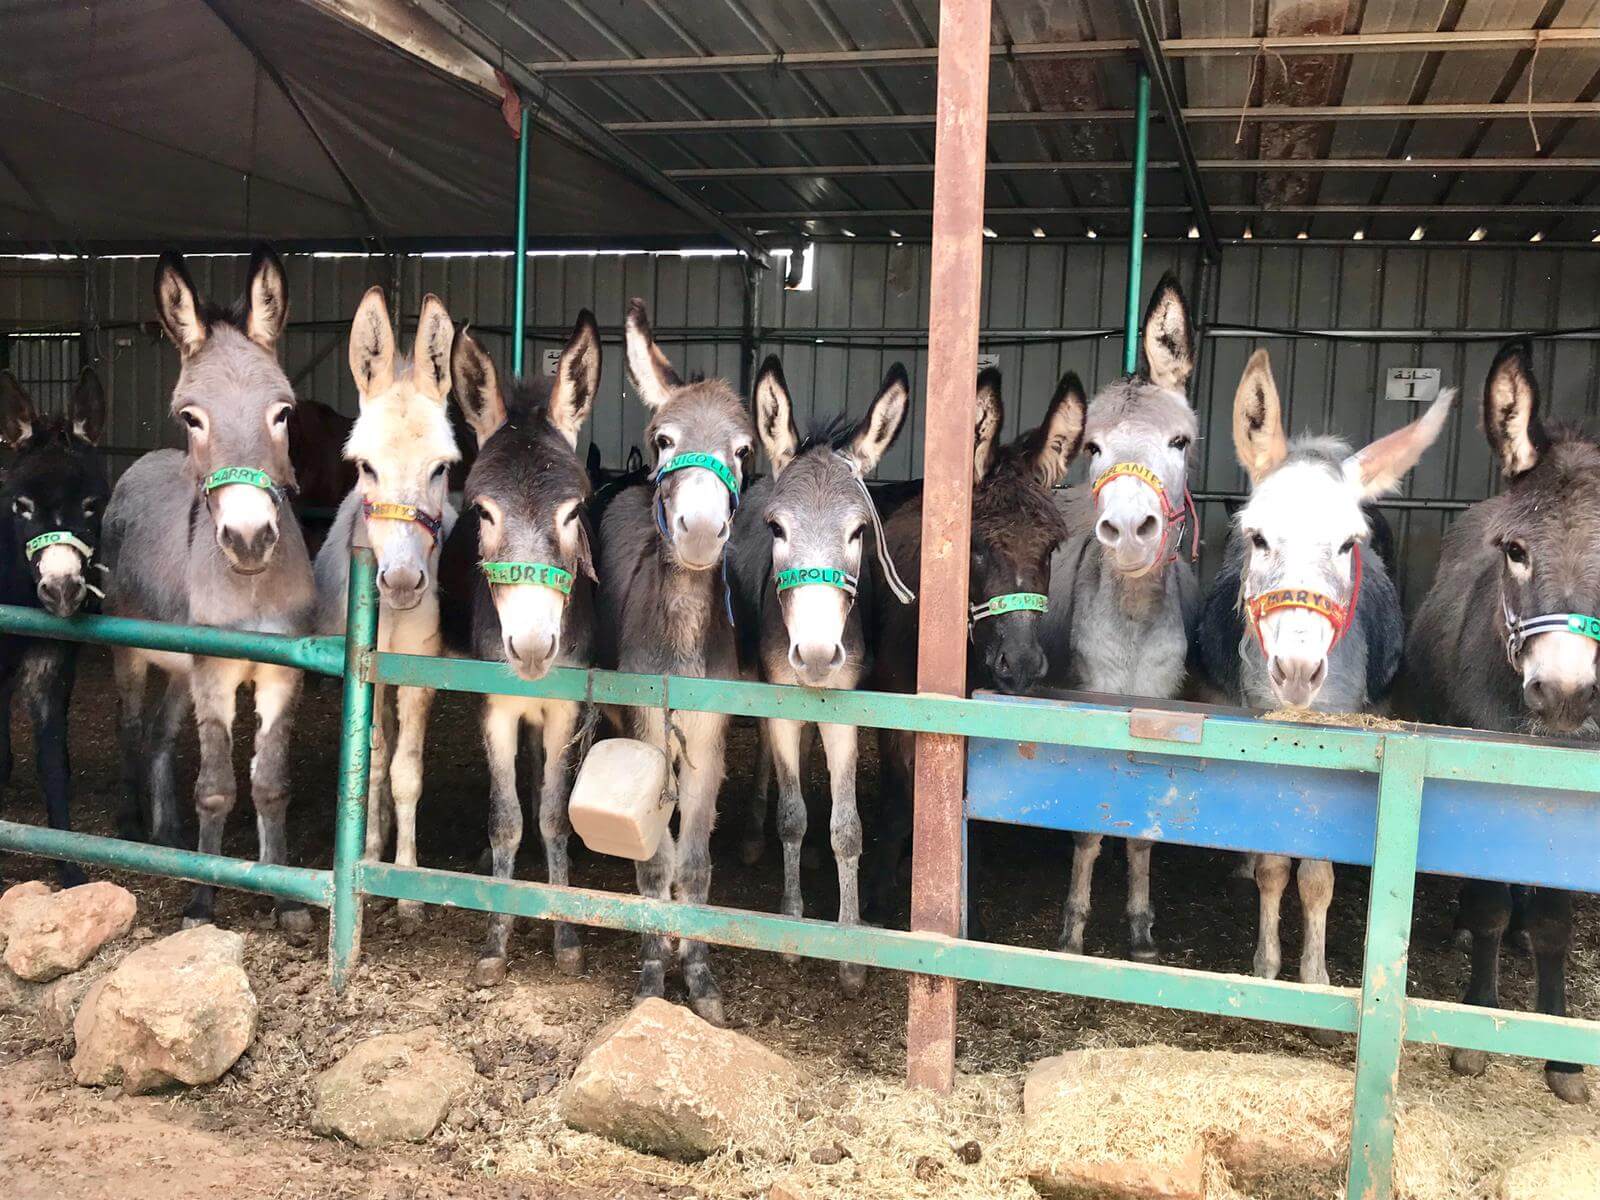 Ezelopvang Safe Haven for Donkeys